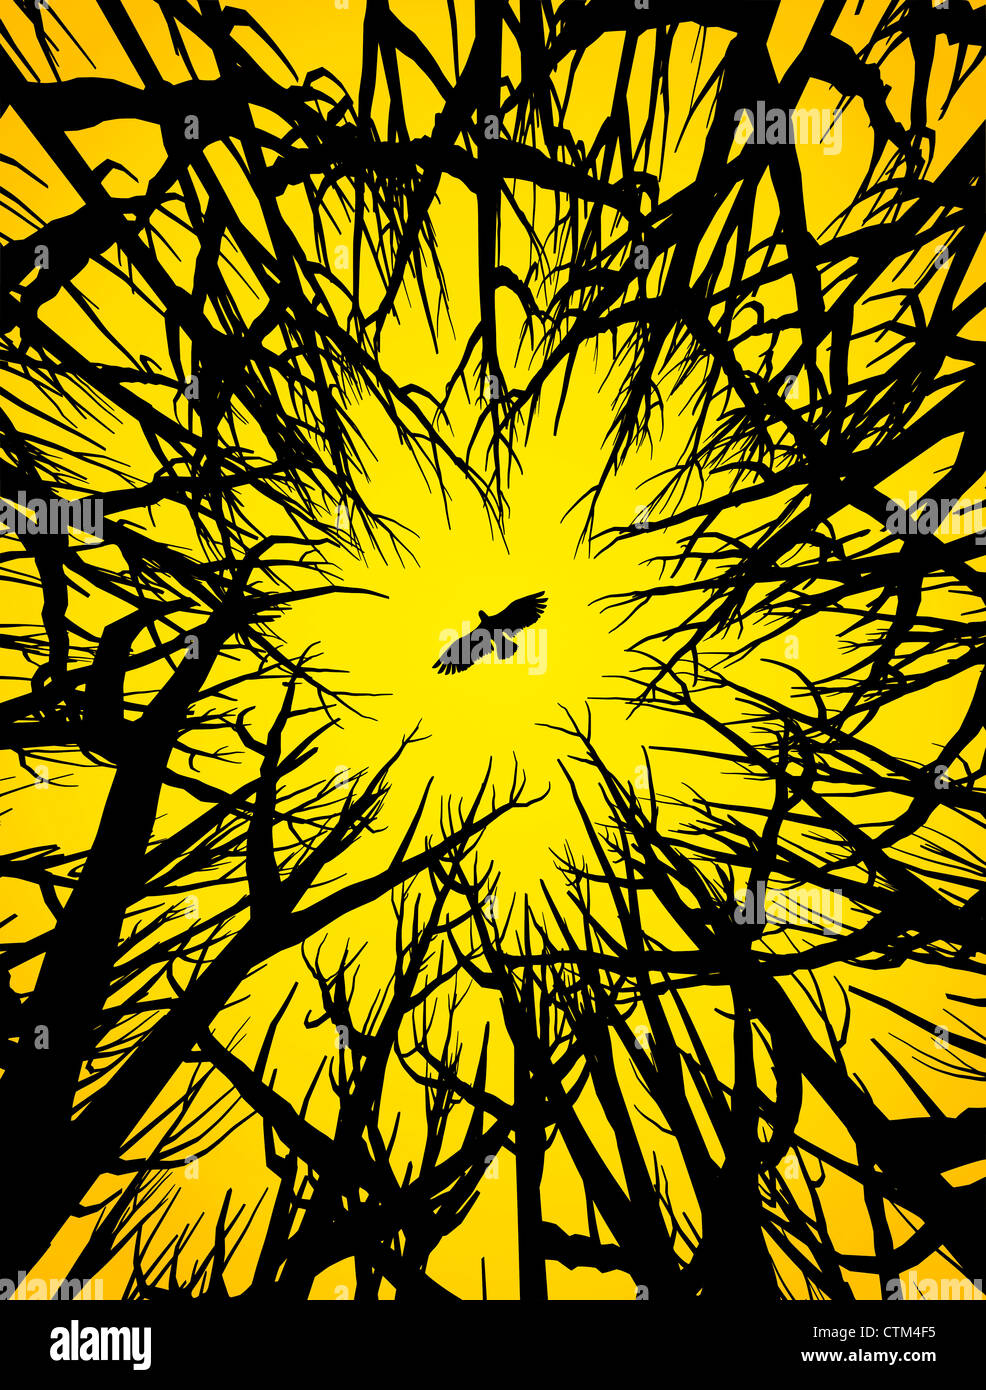 Illustration (Vektor-Stil) der Silhouette von Bäumen und einem fliegenden Raubvogel unter gelben Himmel Stockfoto